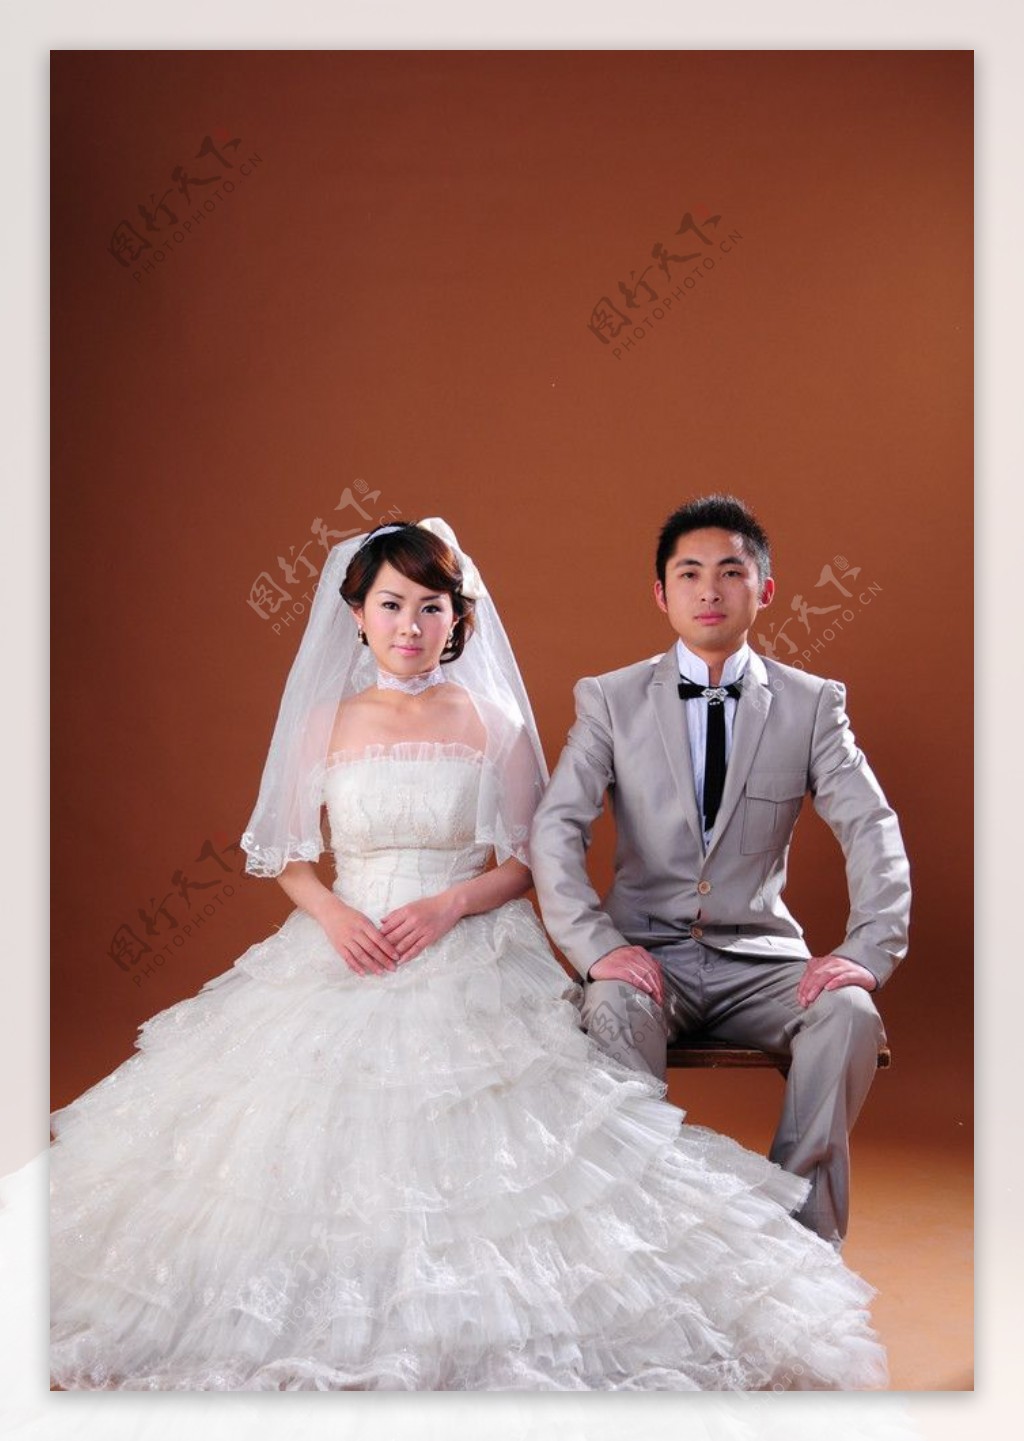 婚纱摄影模版图片